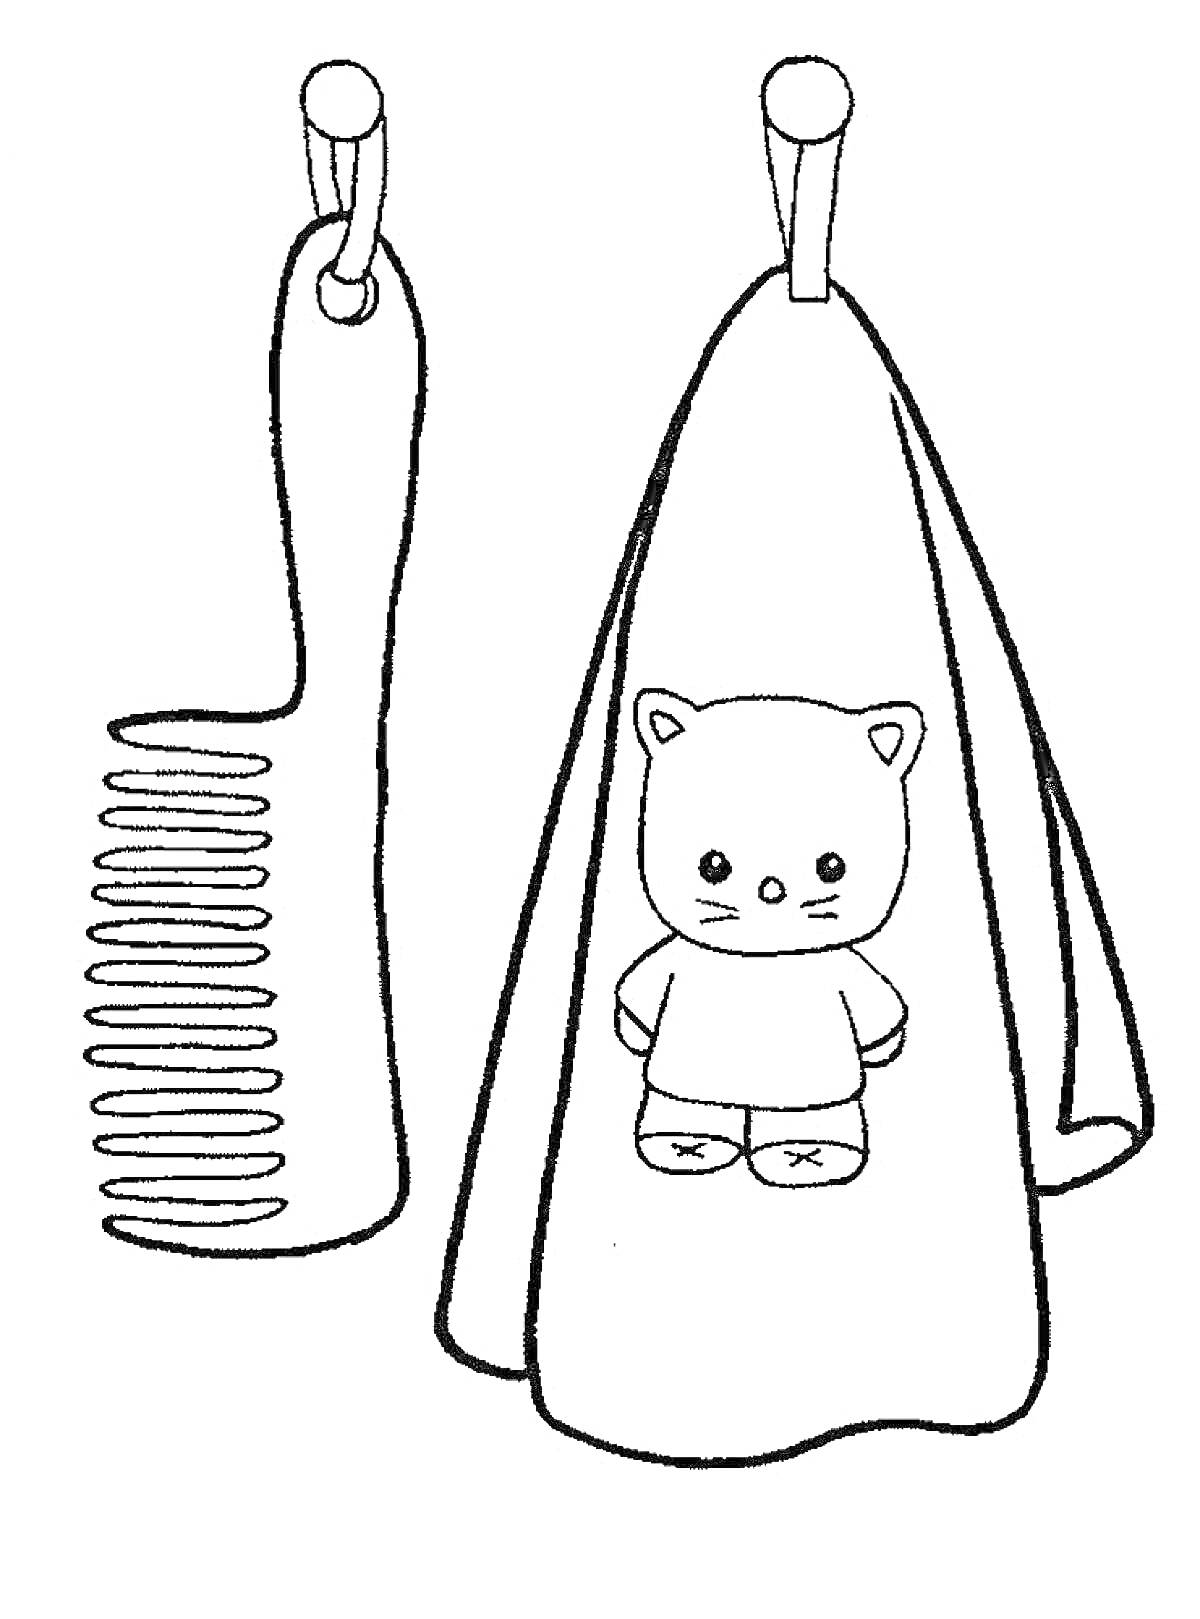 Раскраска Рисунок с полотенцем с медвежонком и расческой на крючках